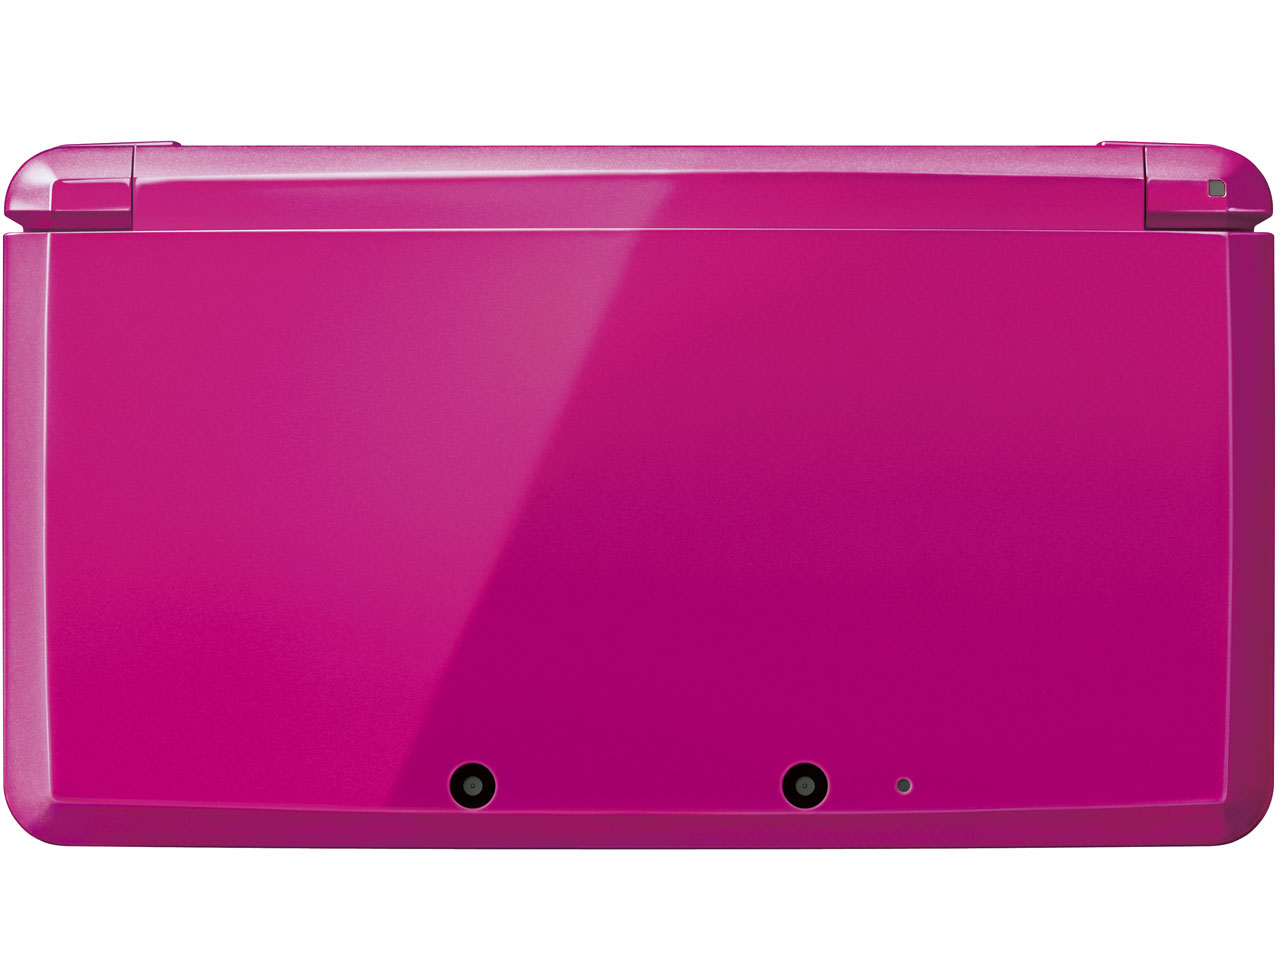 『本体 上面』 ニンテンドー3DS グロスピンク の製品画像